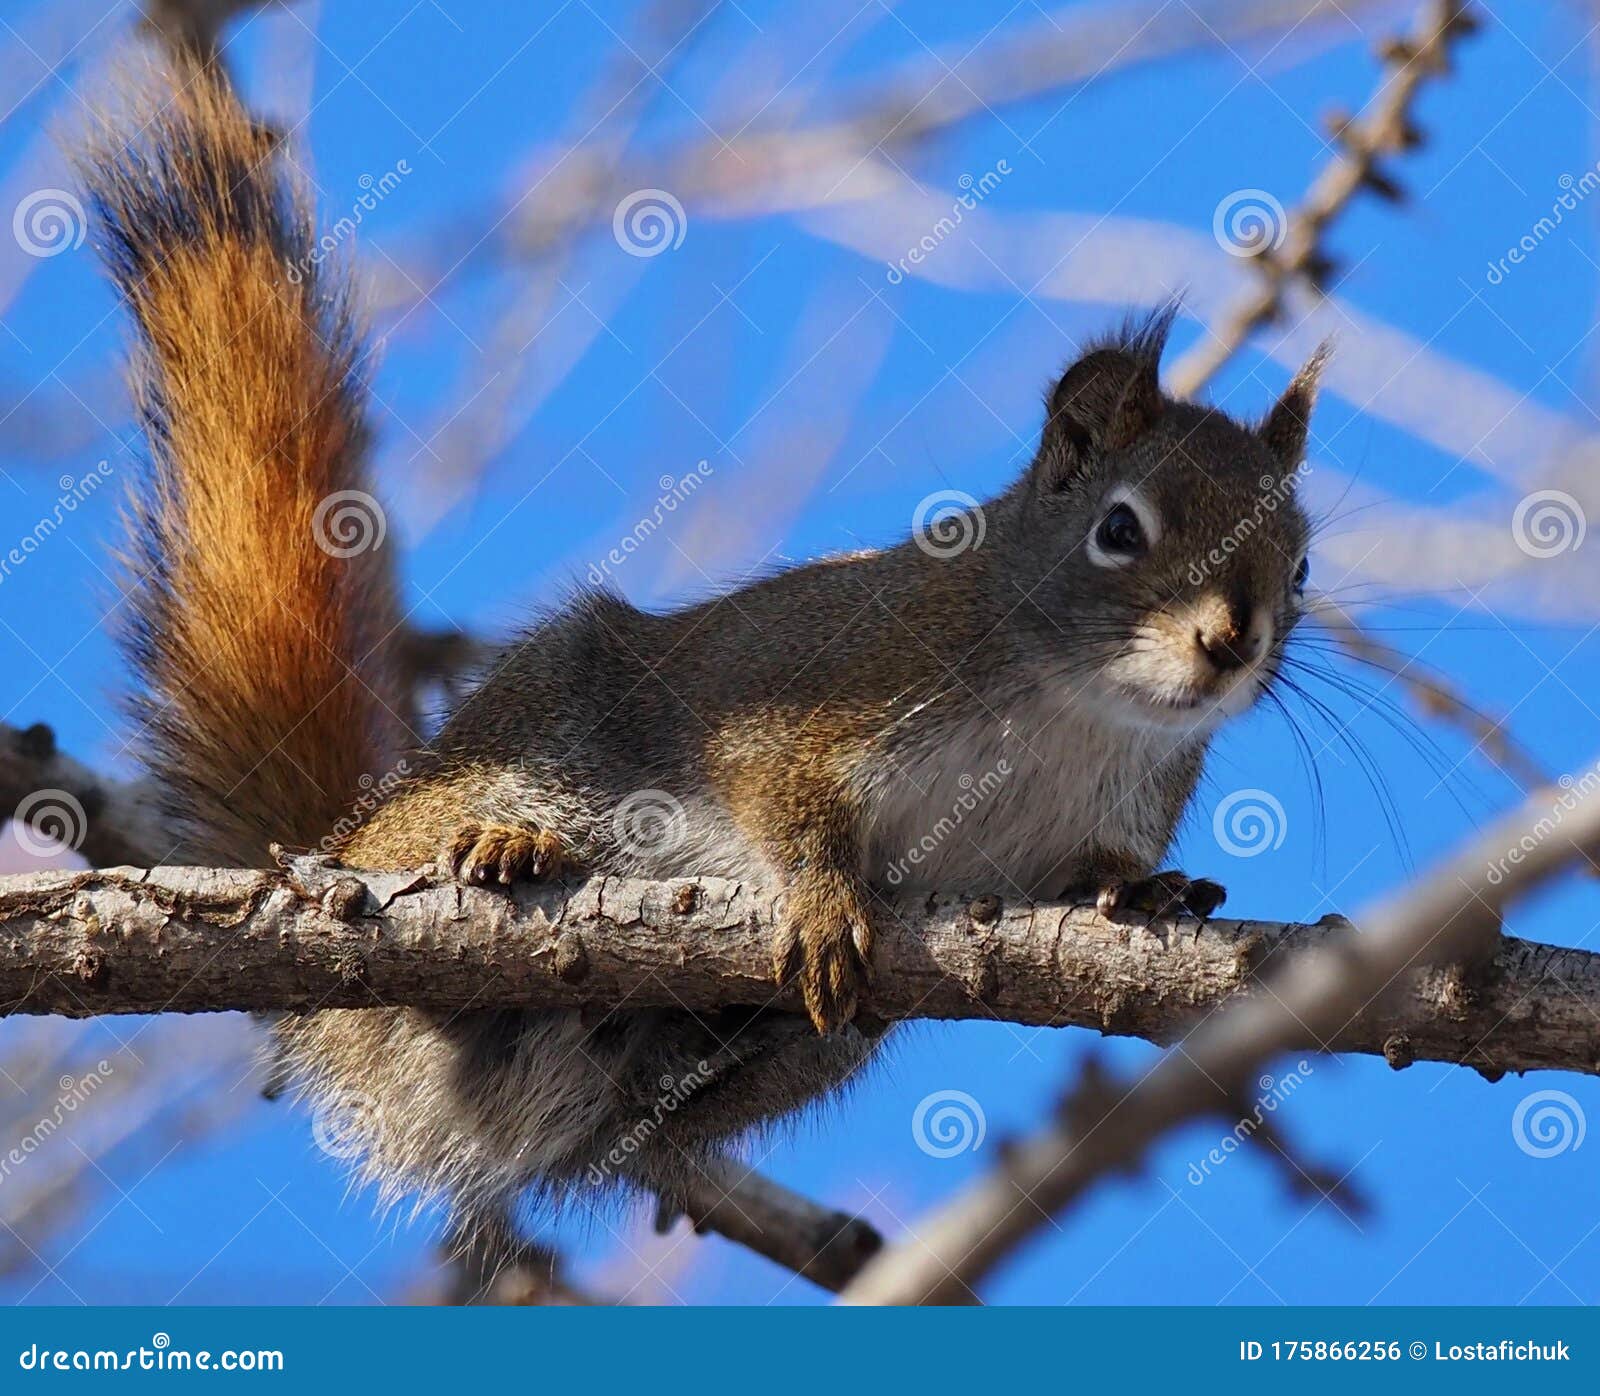 tamiasciurus hudsonicus or red squirrel